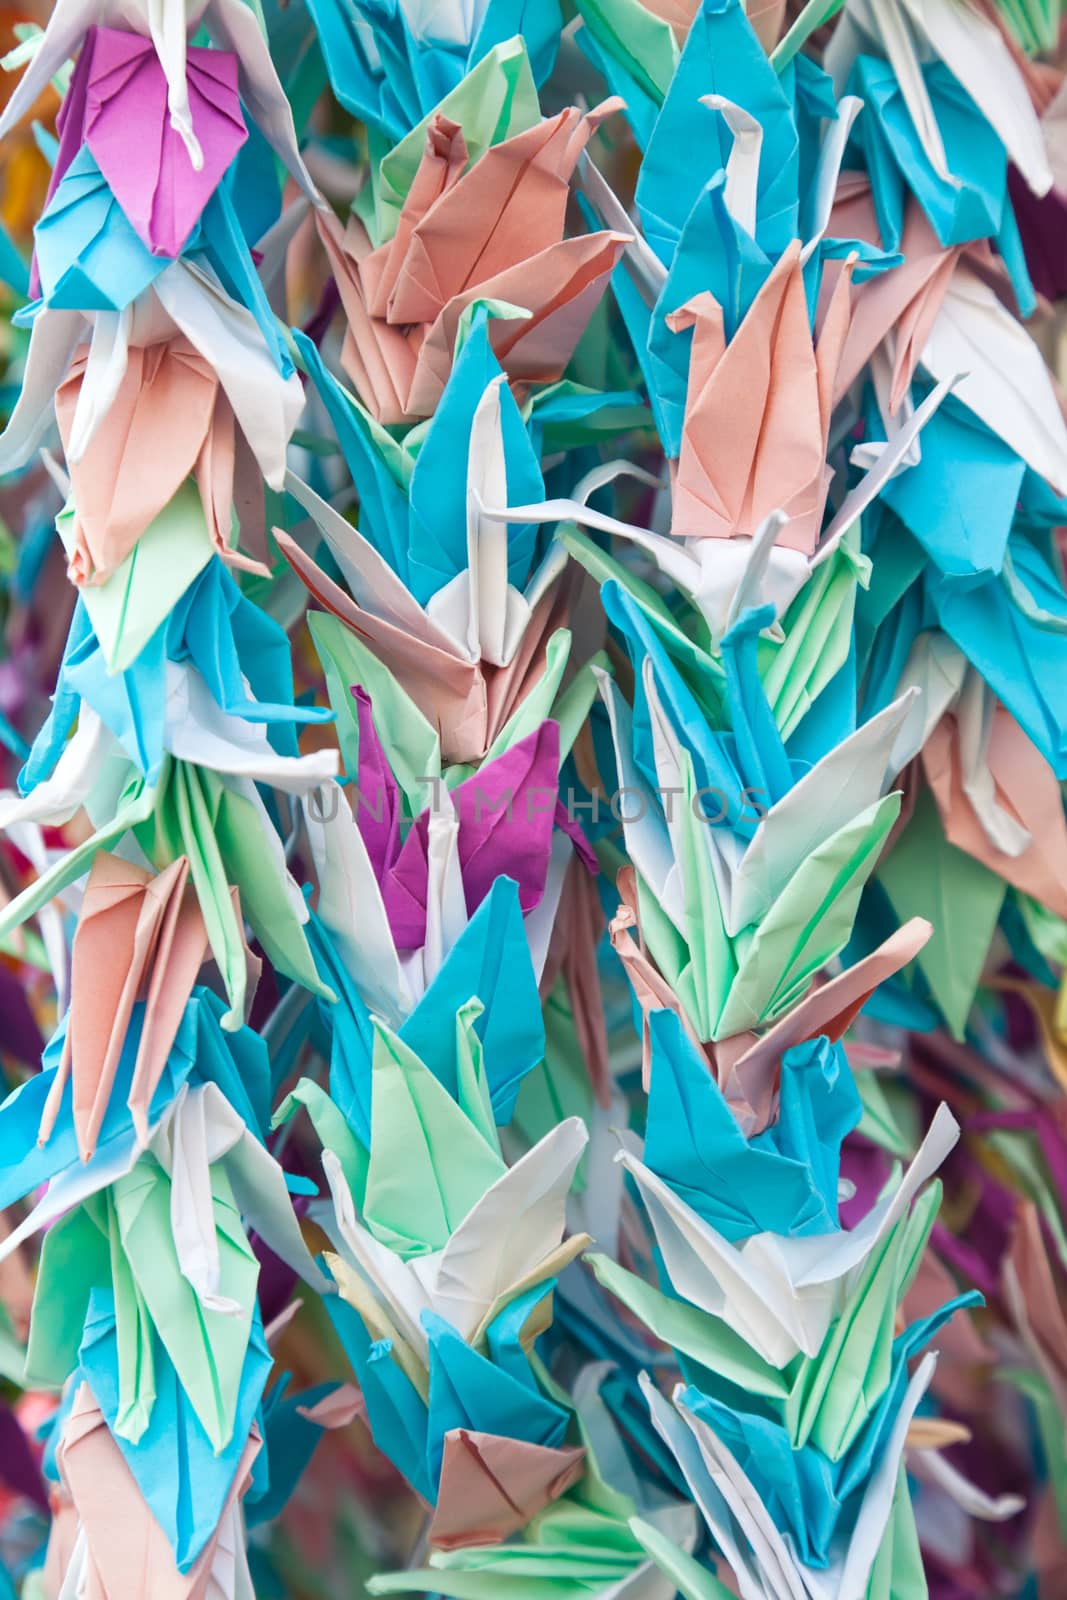 Origami star flower by Portokalis